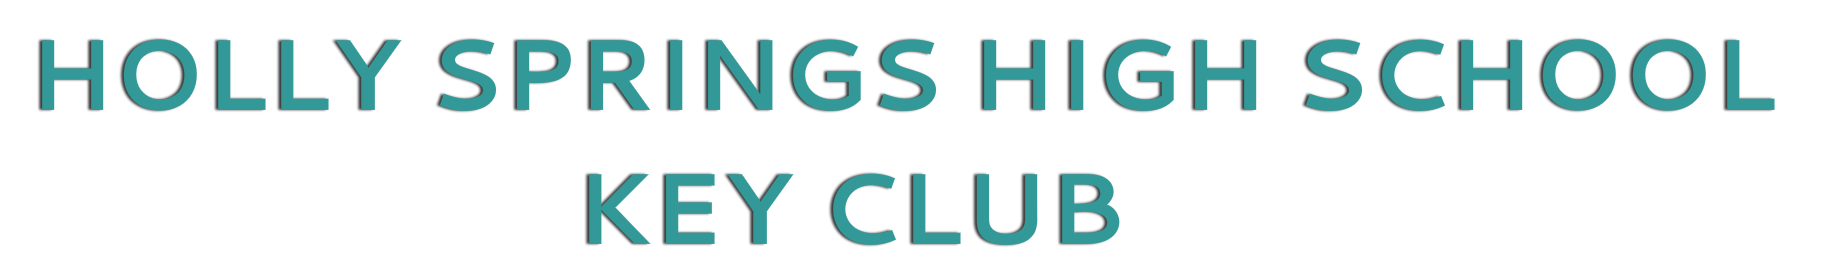 HSHS Key Club